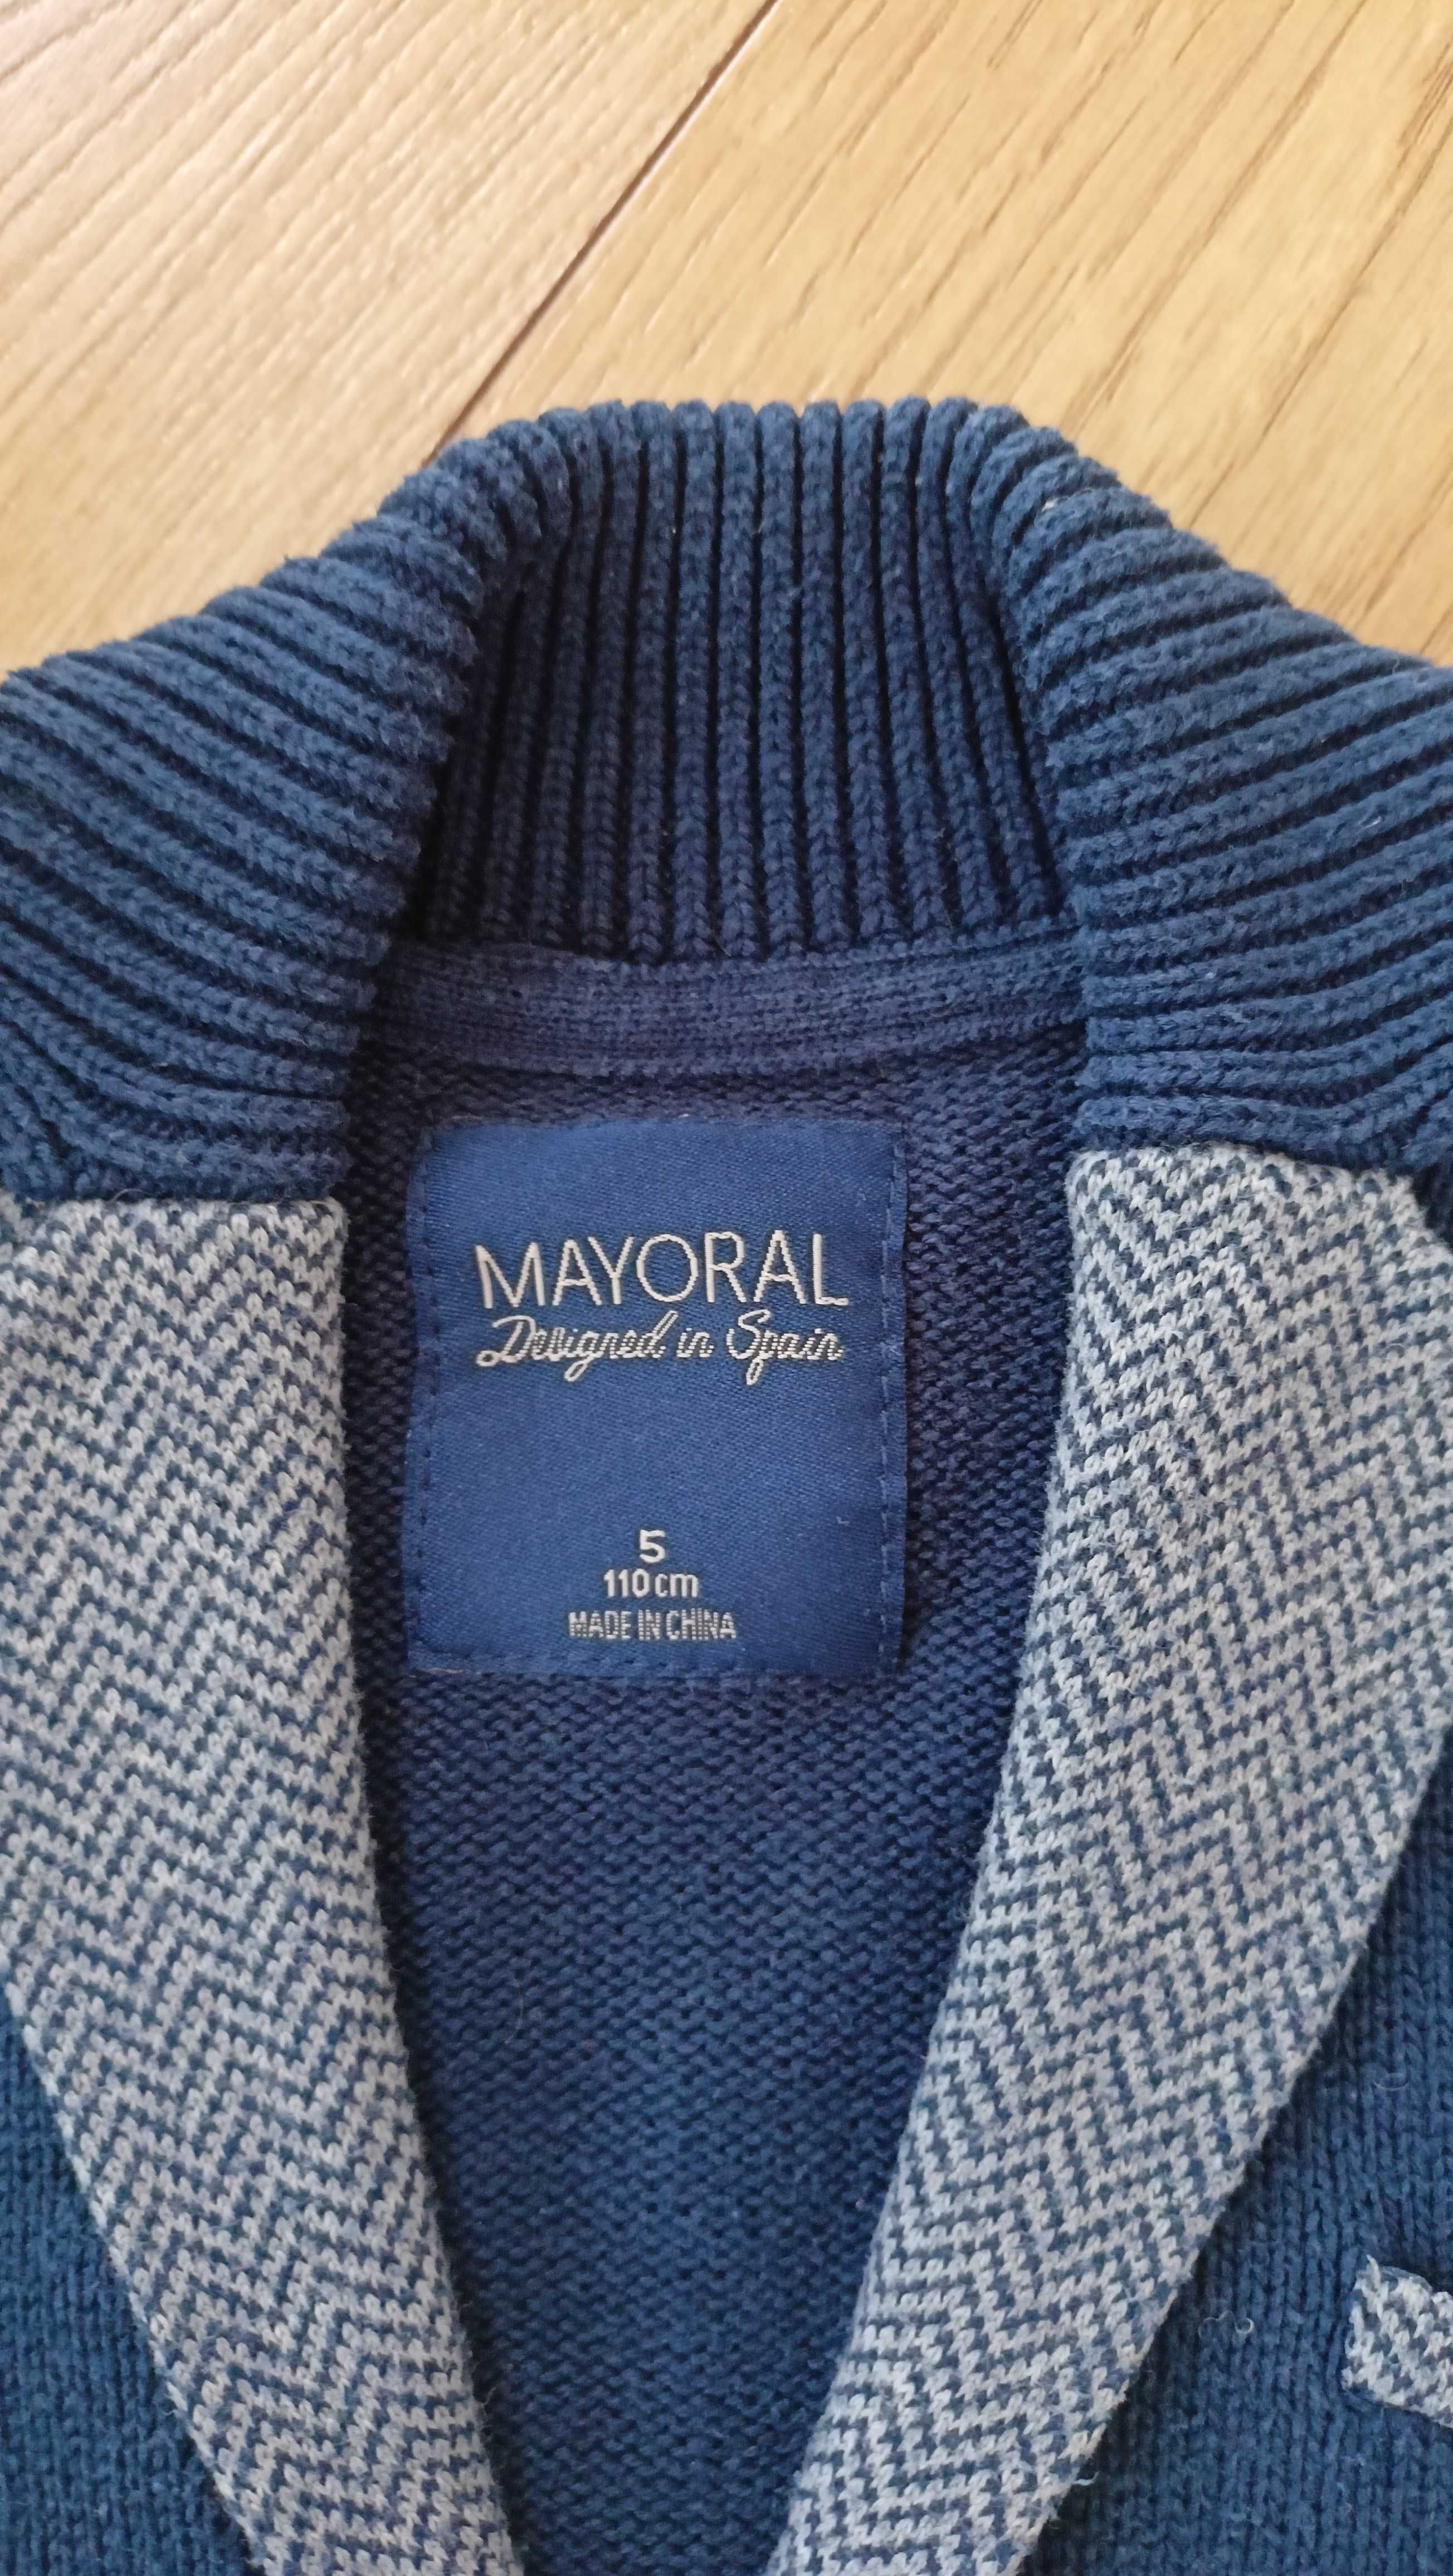 Sweterek firmy mayoral rozmiar 110 cm puls dwie koszulki polo